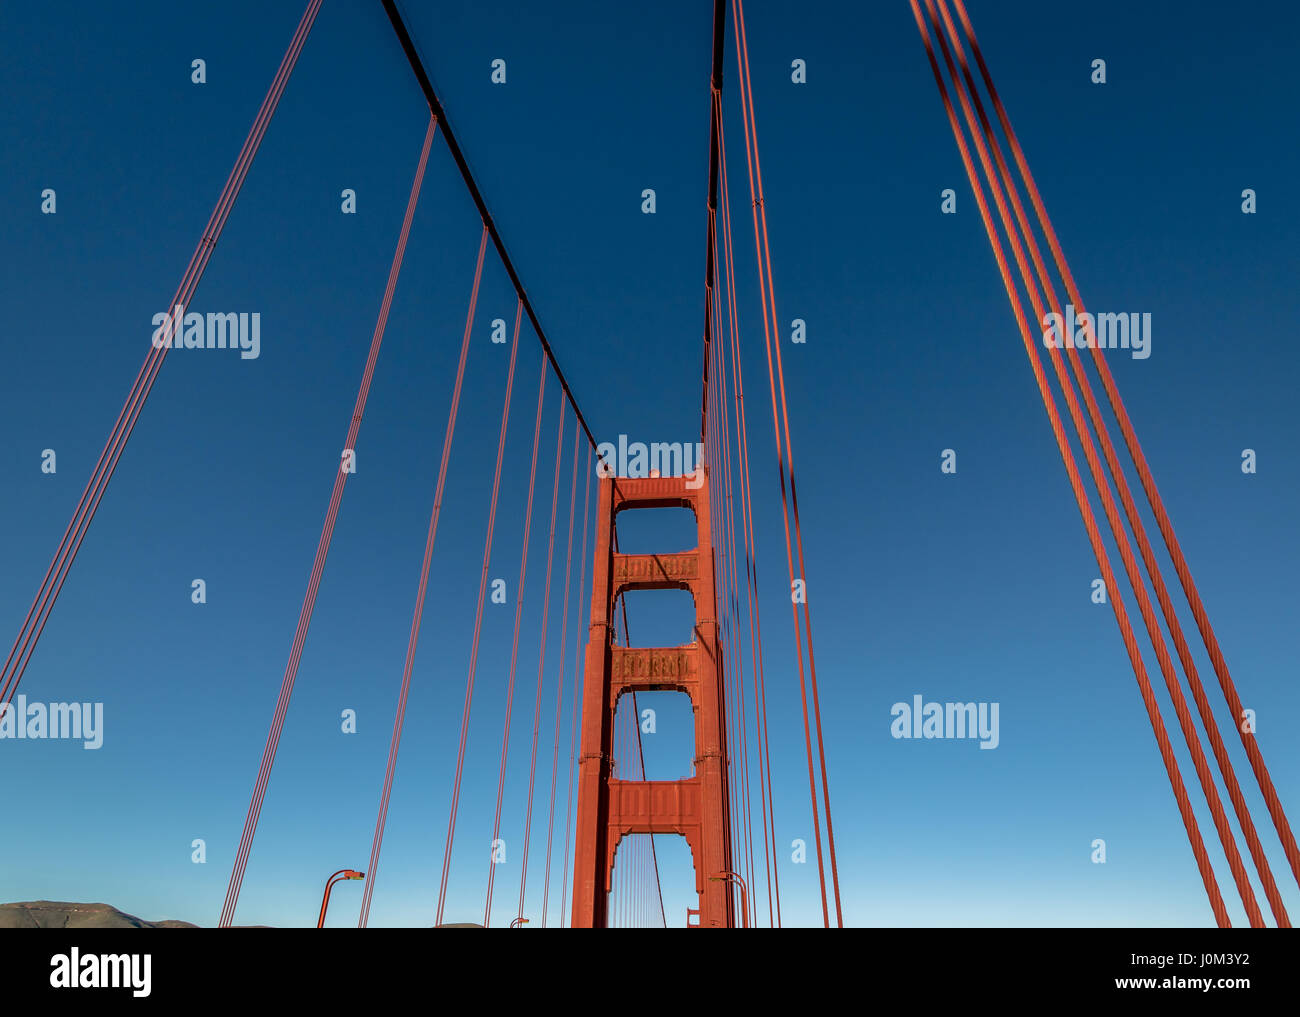 Dettaglio del Golden Gate Bridge - San Francisco, California, Stati Uniti d'America Foto Stock